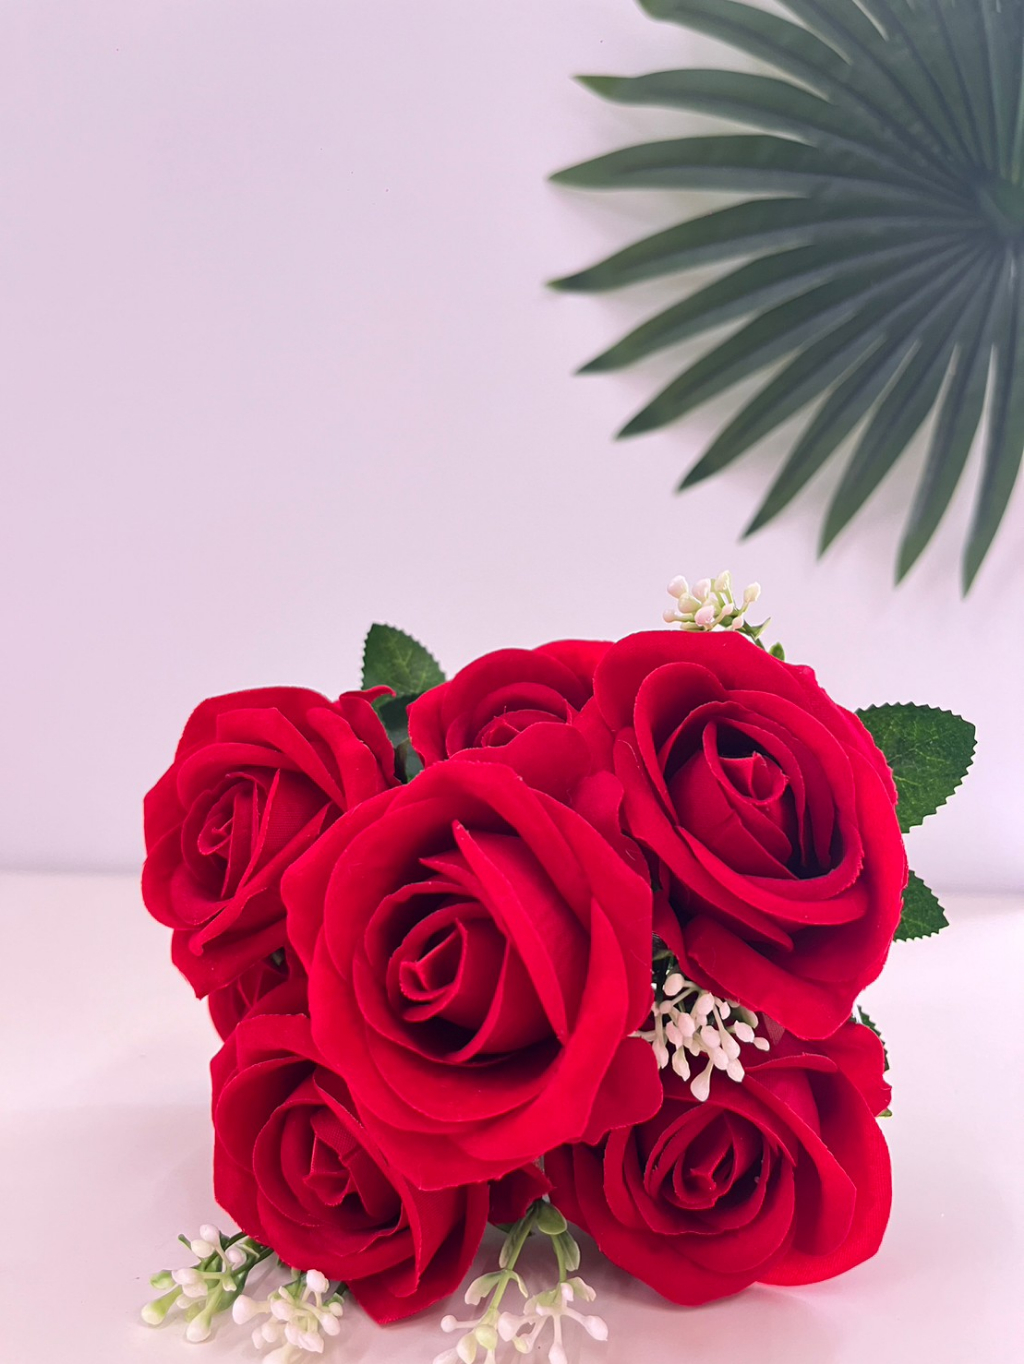 ดอกไม้ปลอม-ช่อดอกกุหลาบปลอมสีแดง-ดอกขนาดใหญ่มาก-1-ช่อมี-7-ดอก-สำหรับจัดแจกัน-ตกแต่งประดับบ้าน